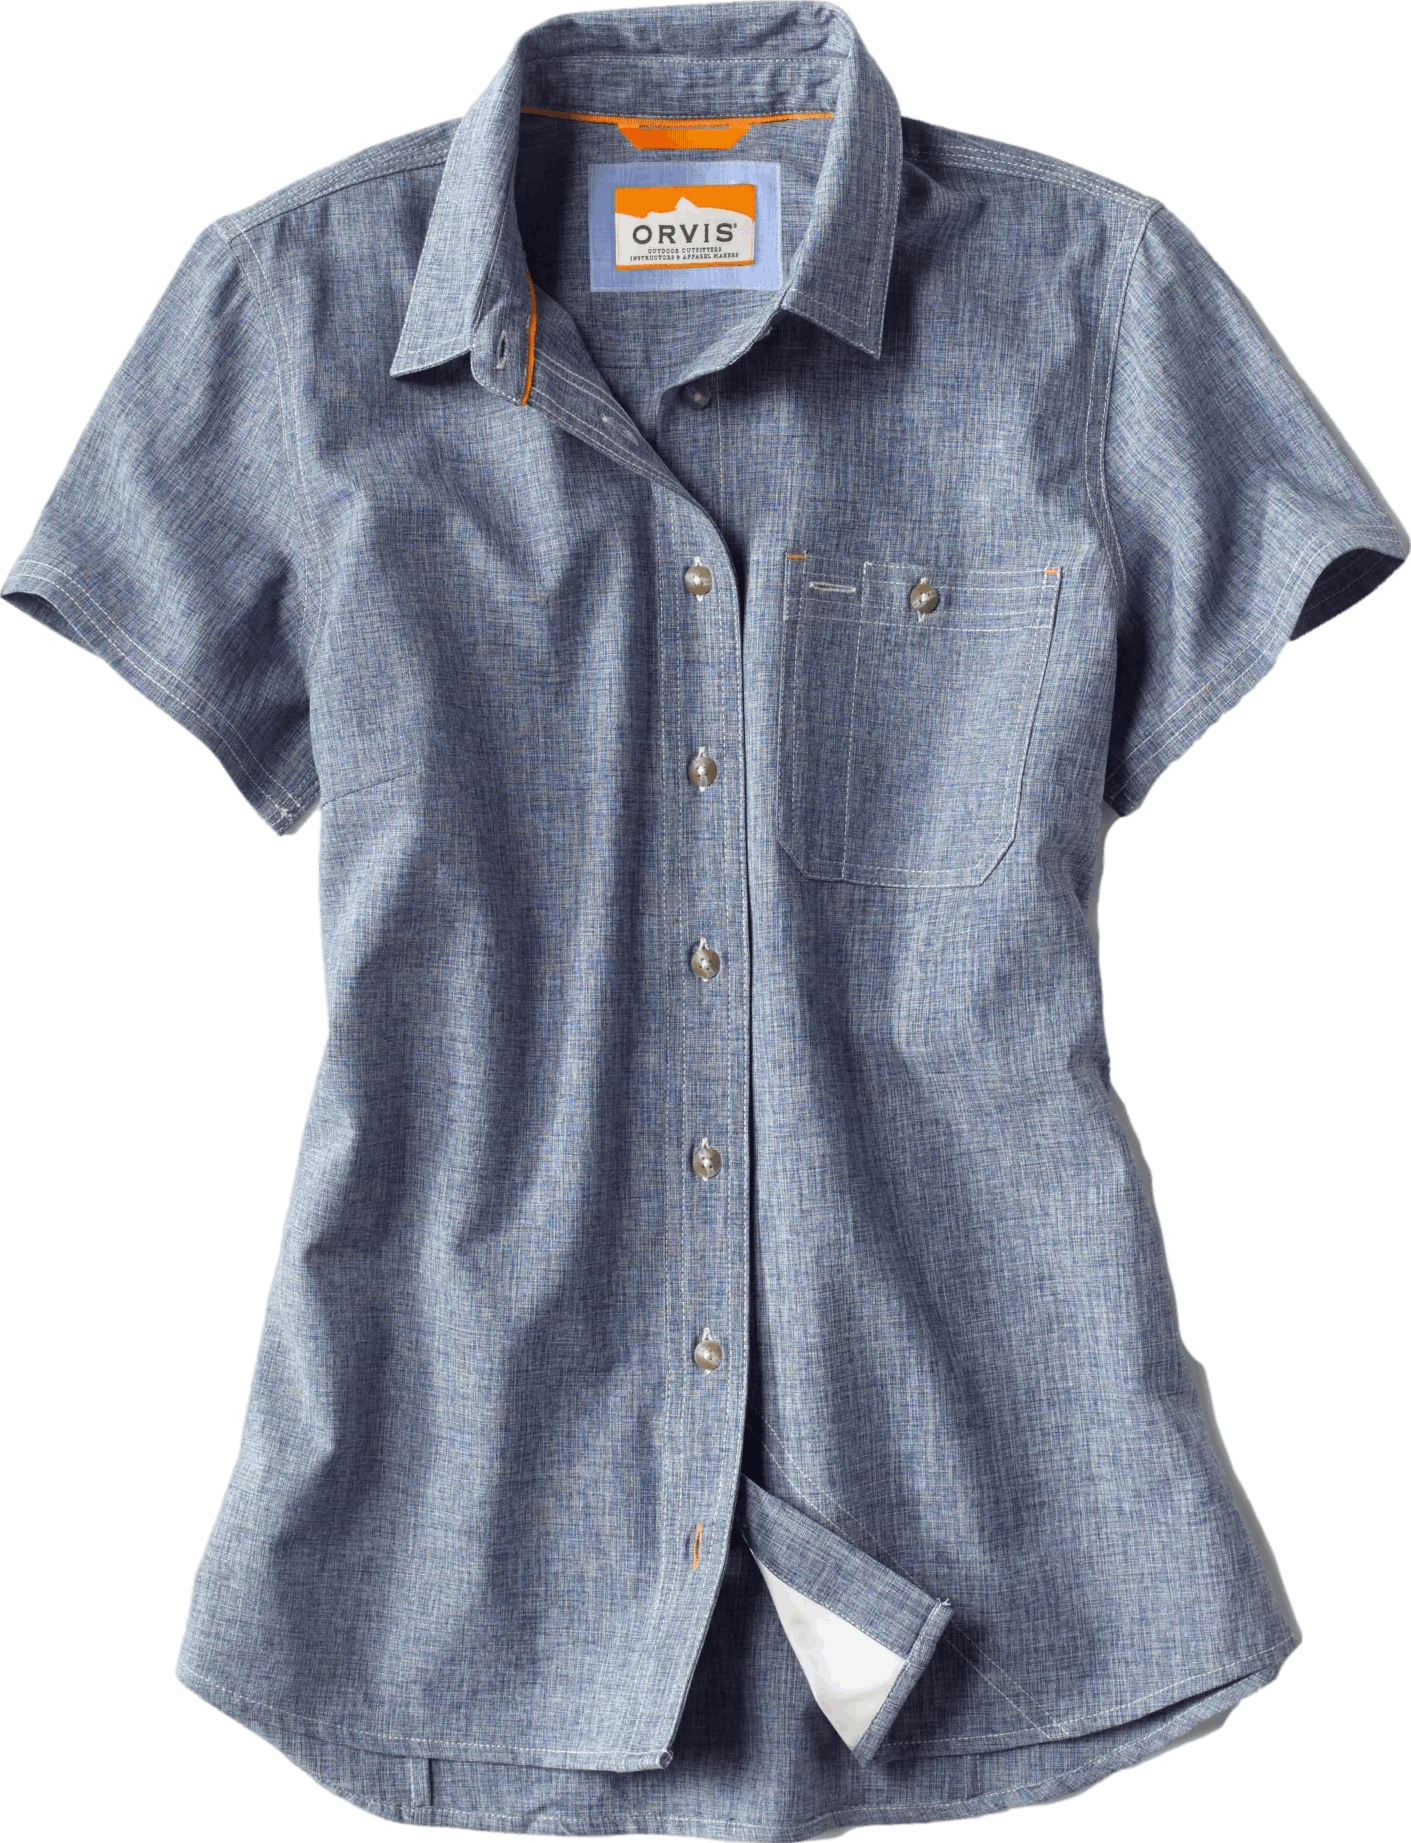 Orvis Women's Short-Sleeved Tech Chambray Workshirt